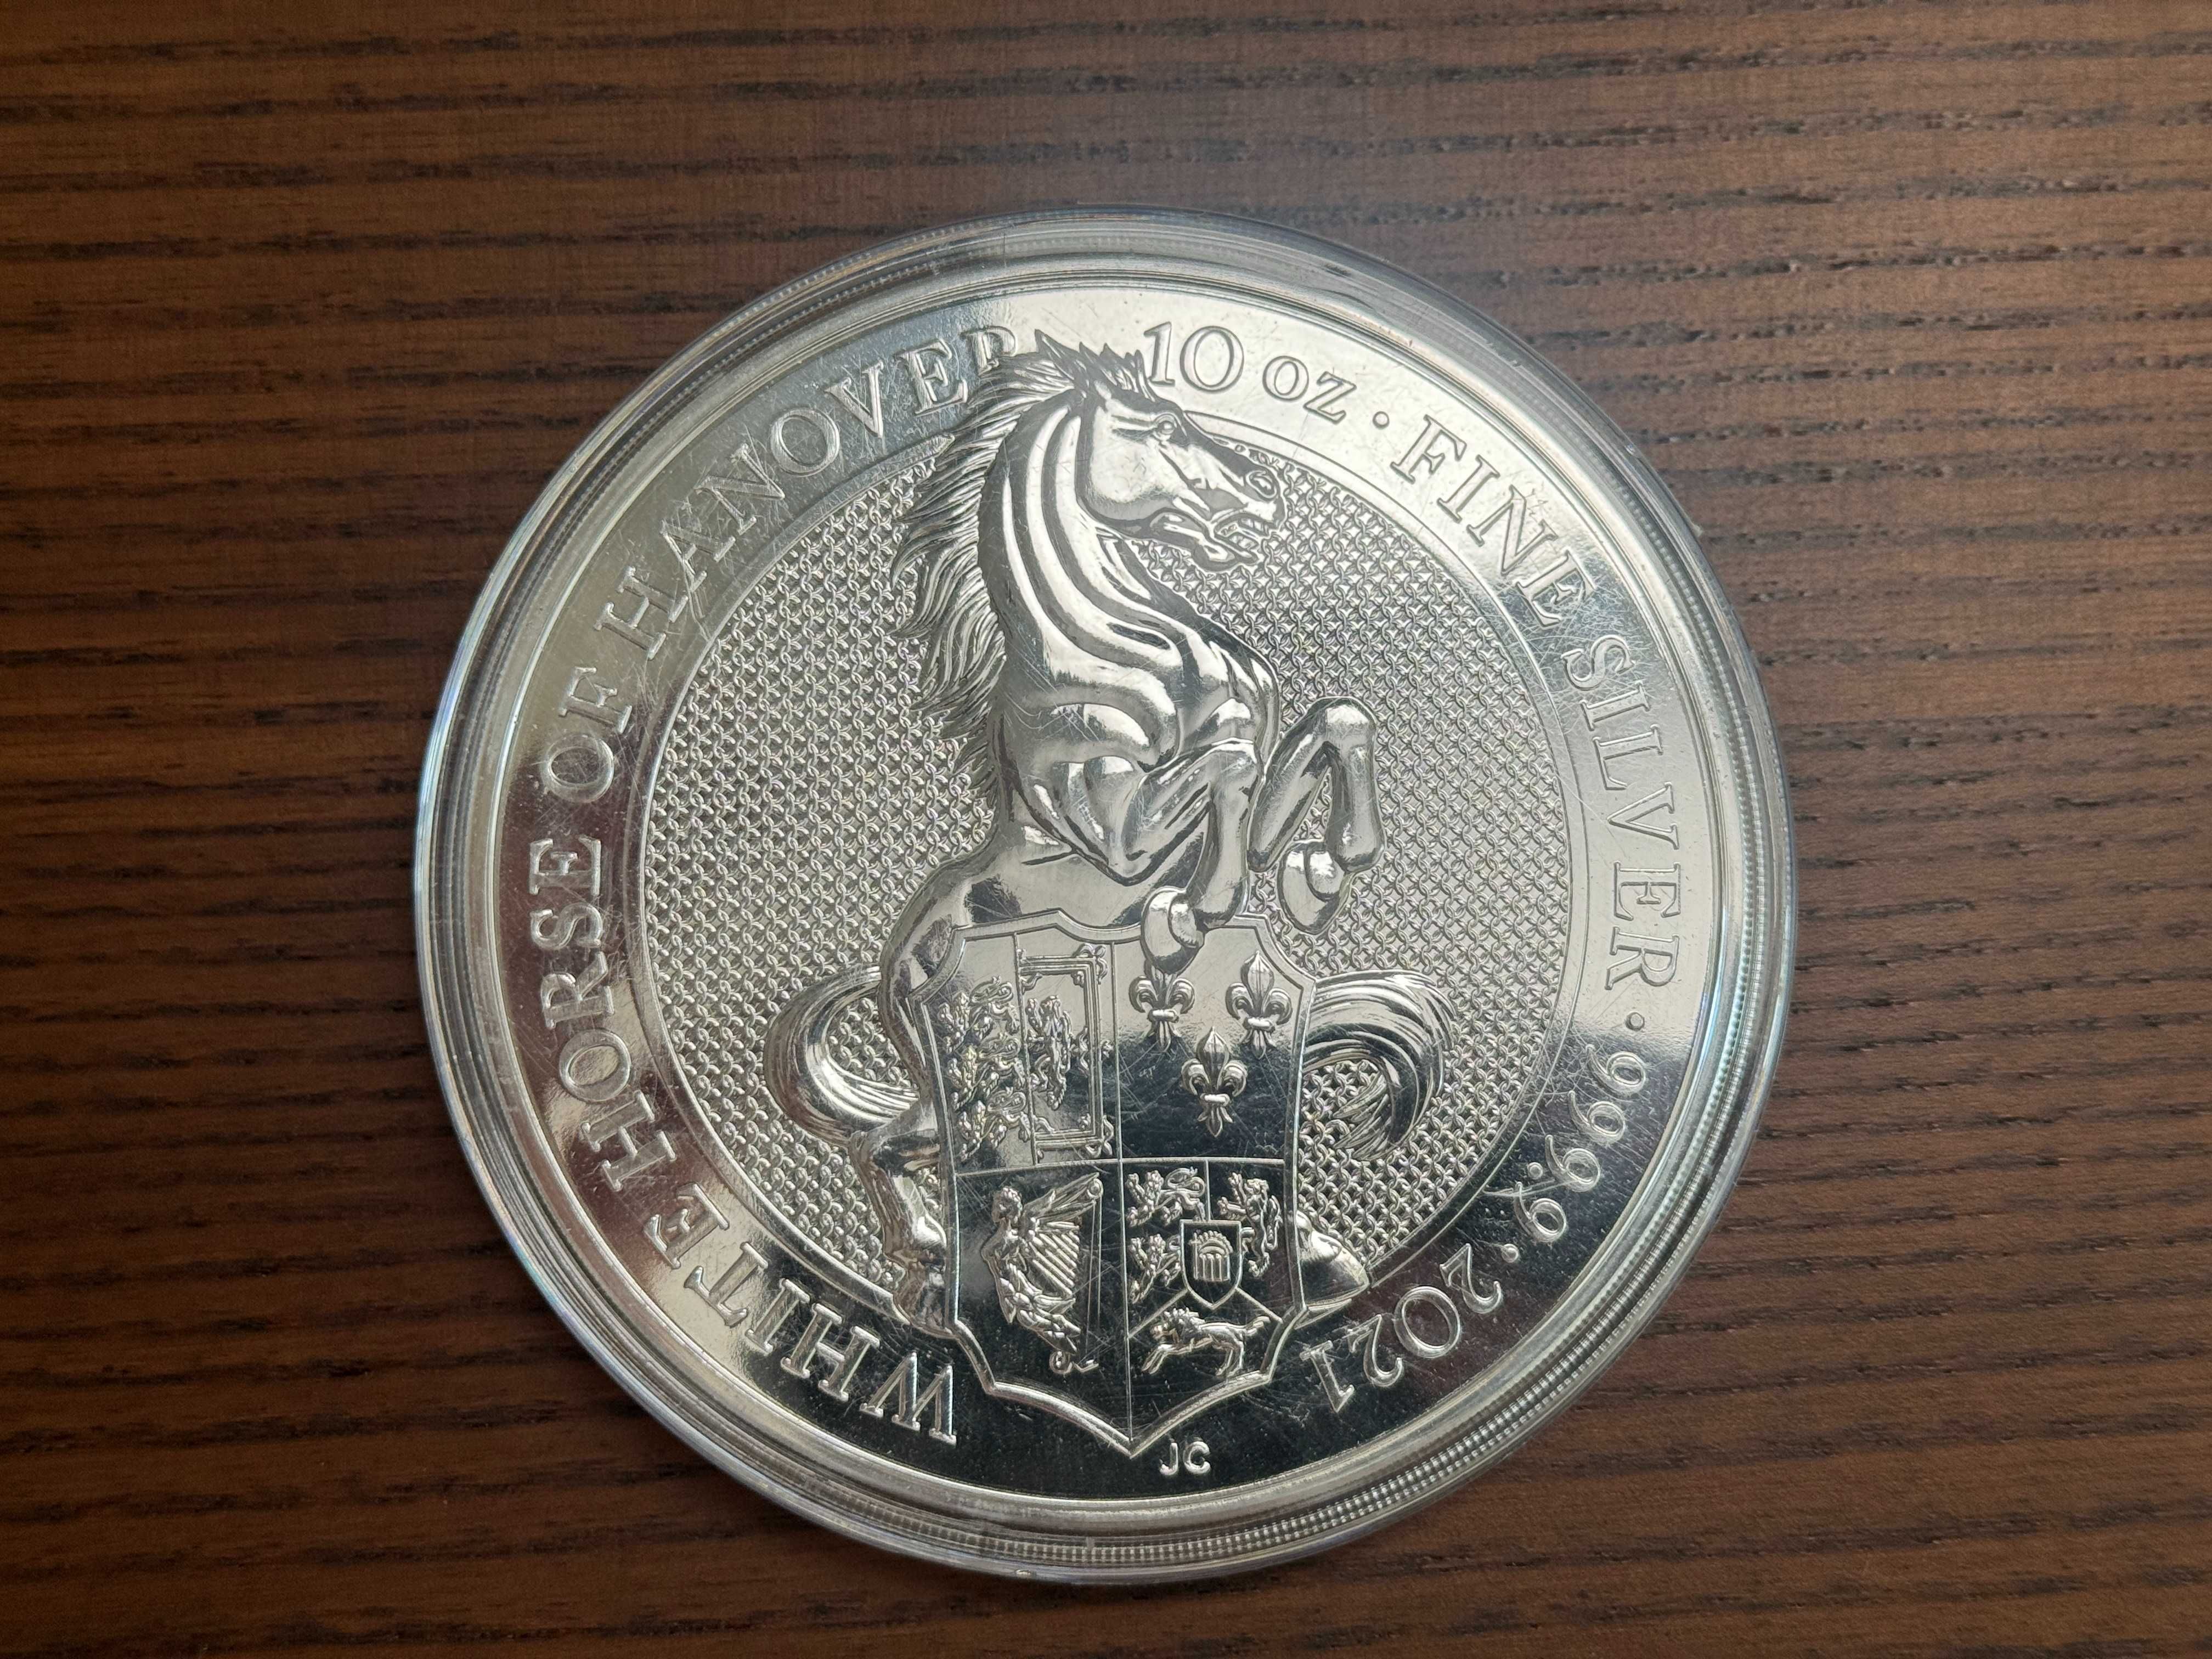 Vând monedă de argint White Horse, 2021, puritate 999.9%, încapsulată